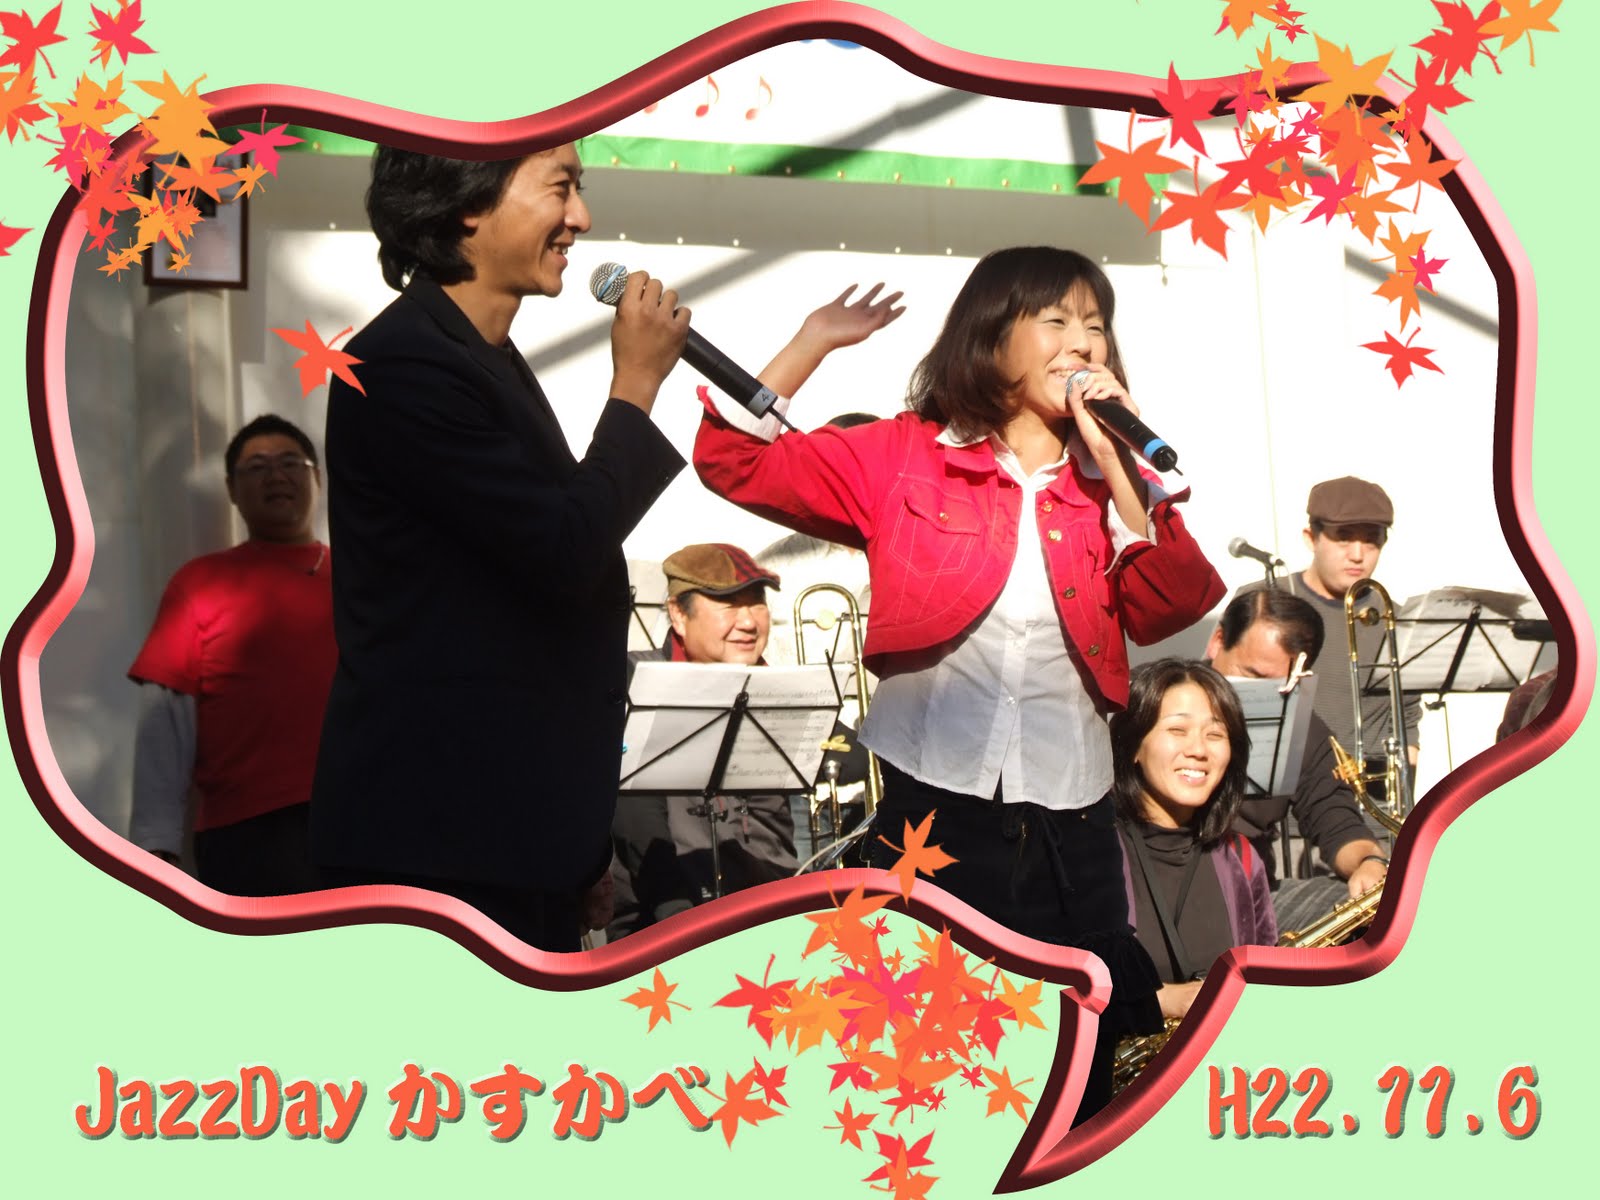 １１月６日に開催された「JazzDayかすかべ」の様子をウェブア